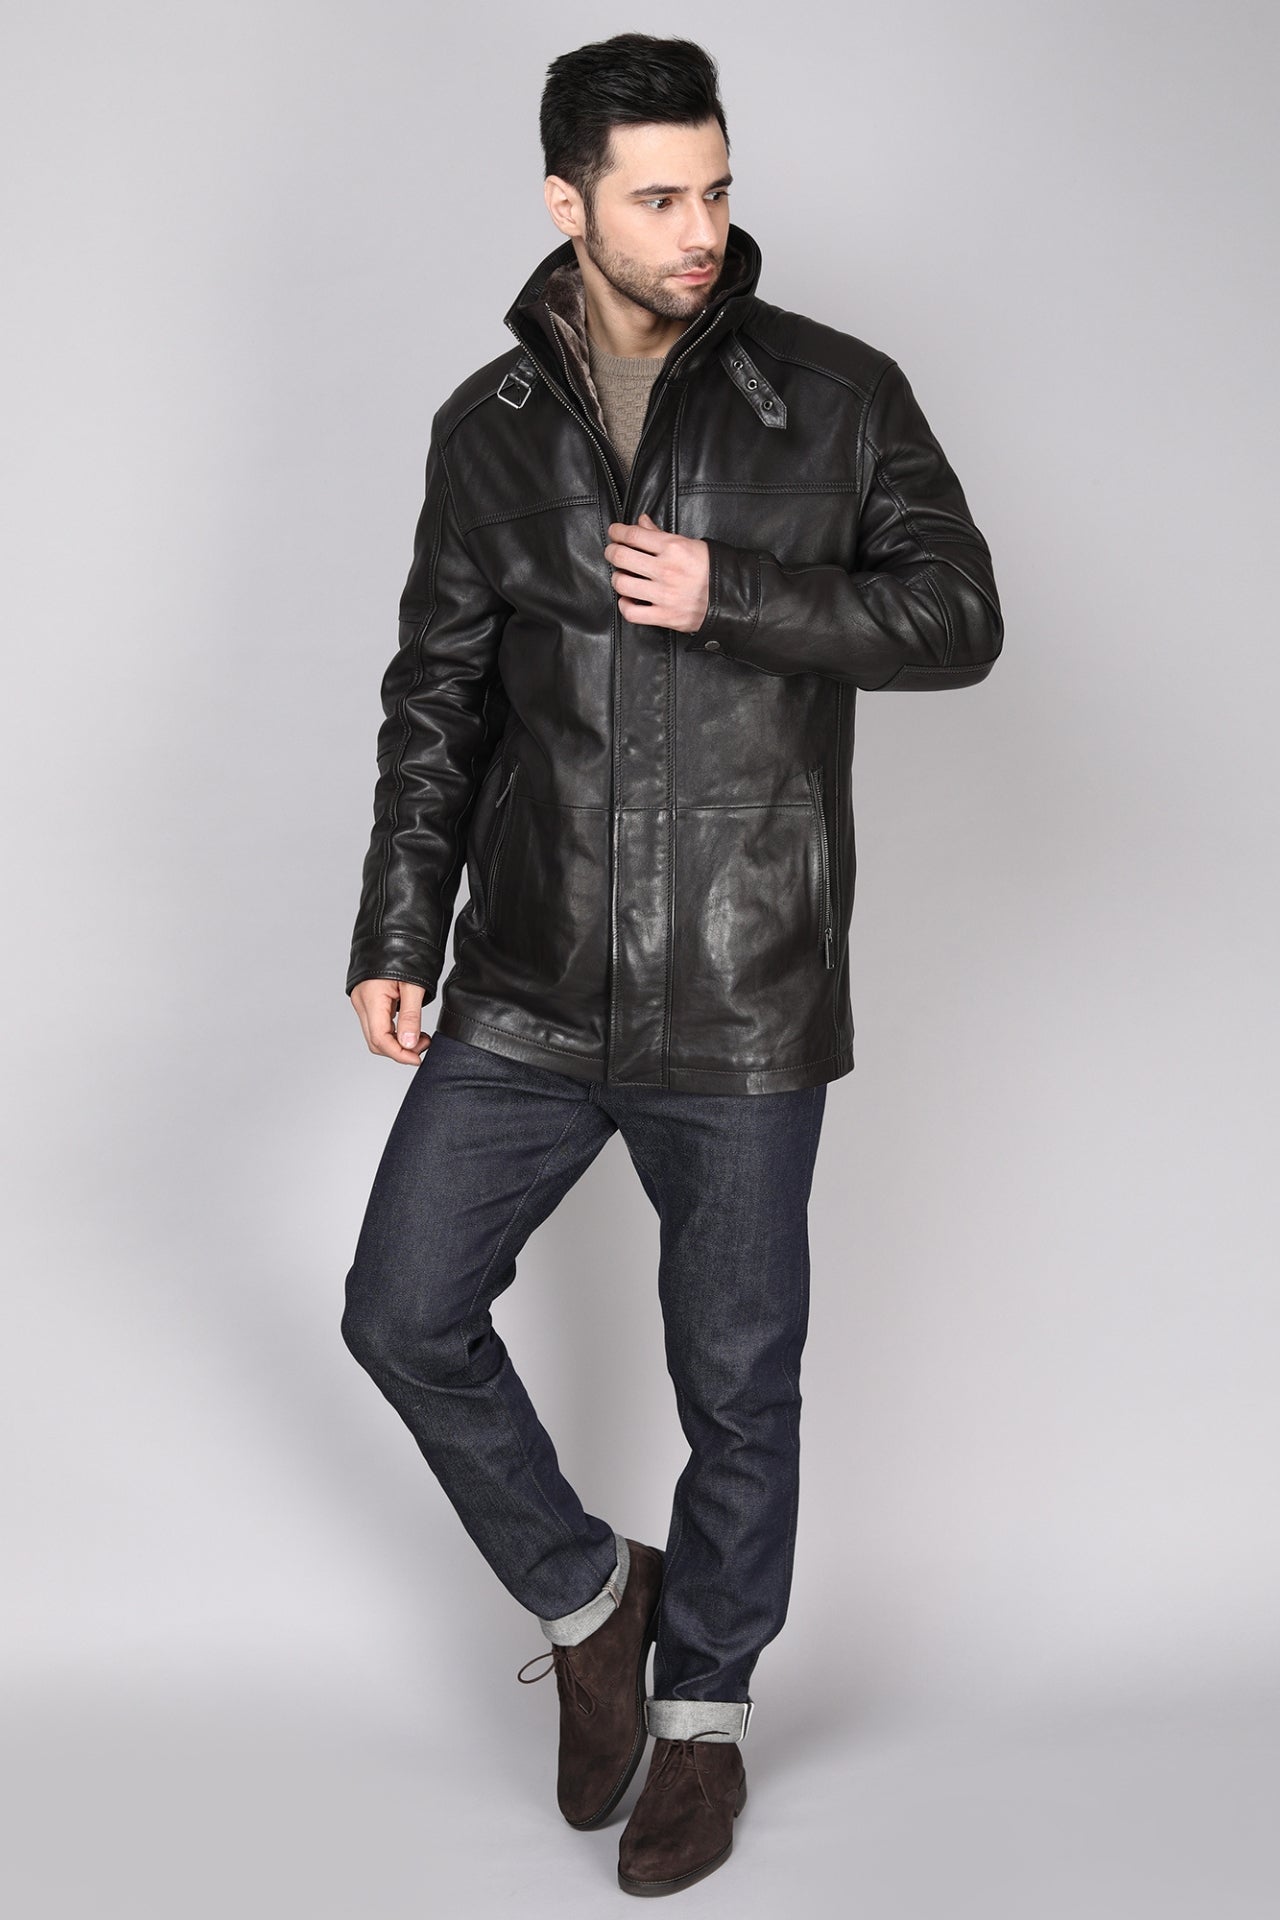 MYKEL Genuine Leather Jacket – Danier